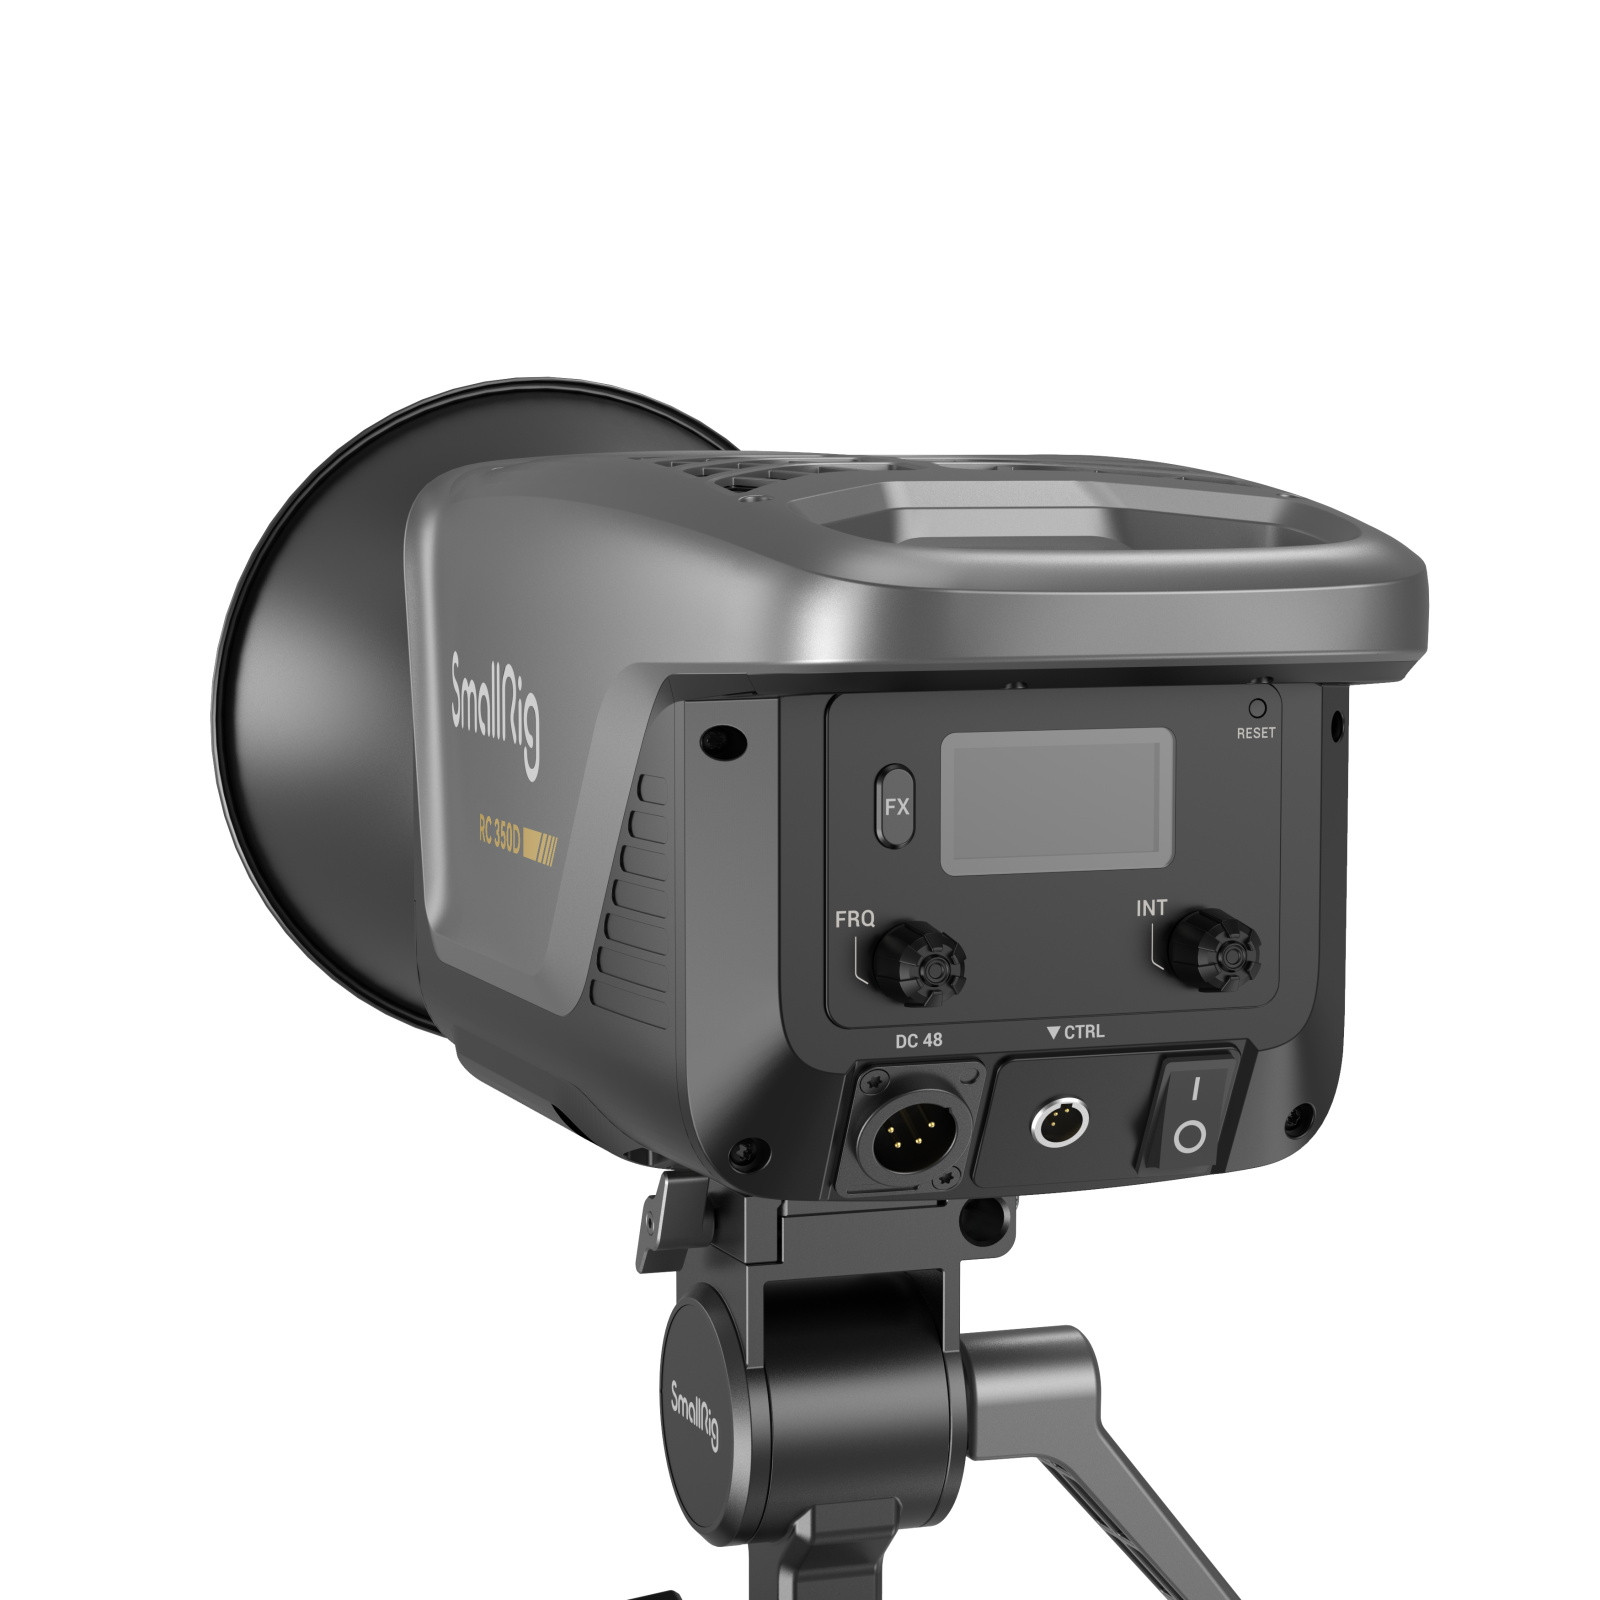 SmallRig RC350D COB LED Video Light (JP) 3964